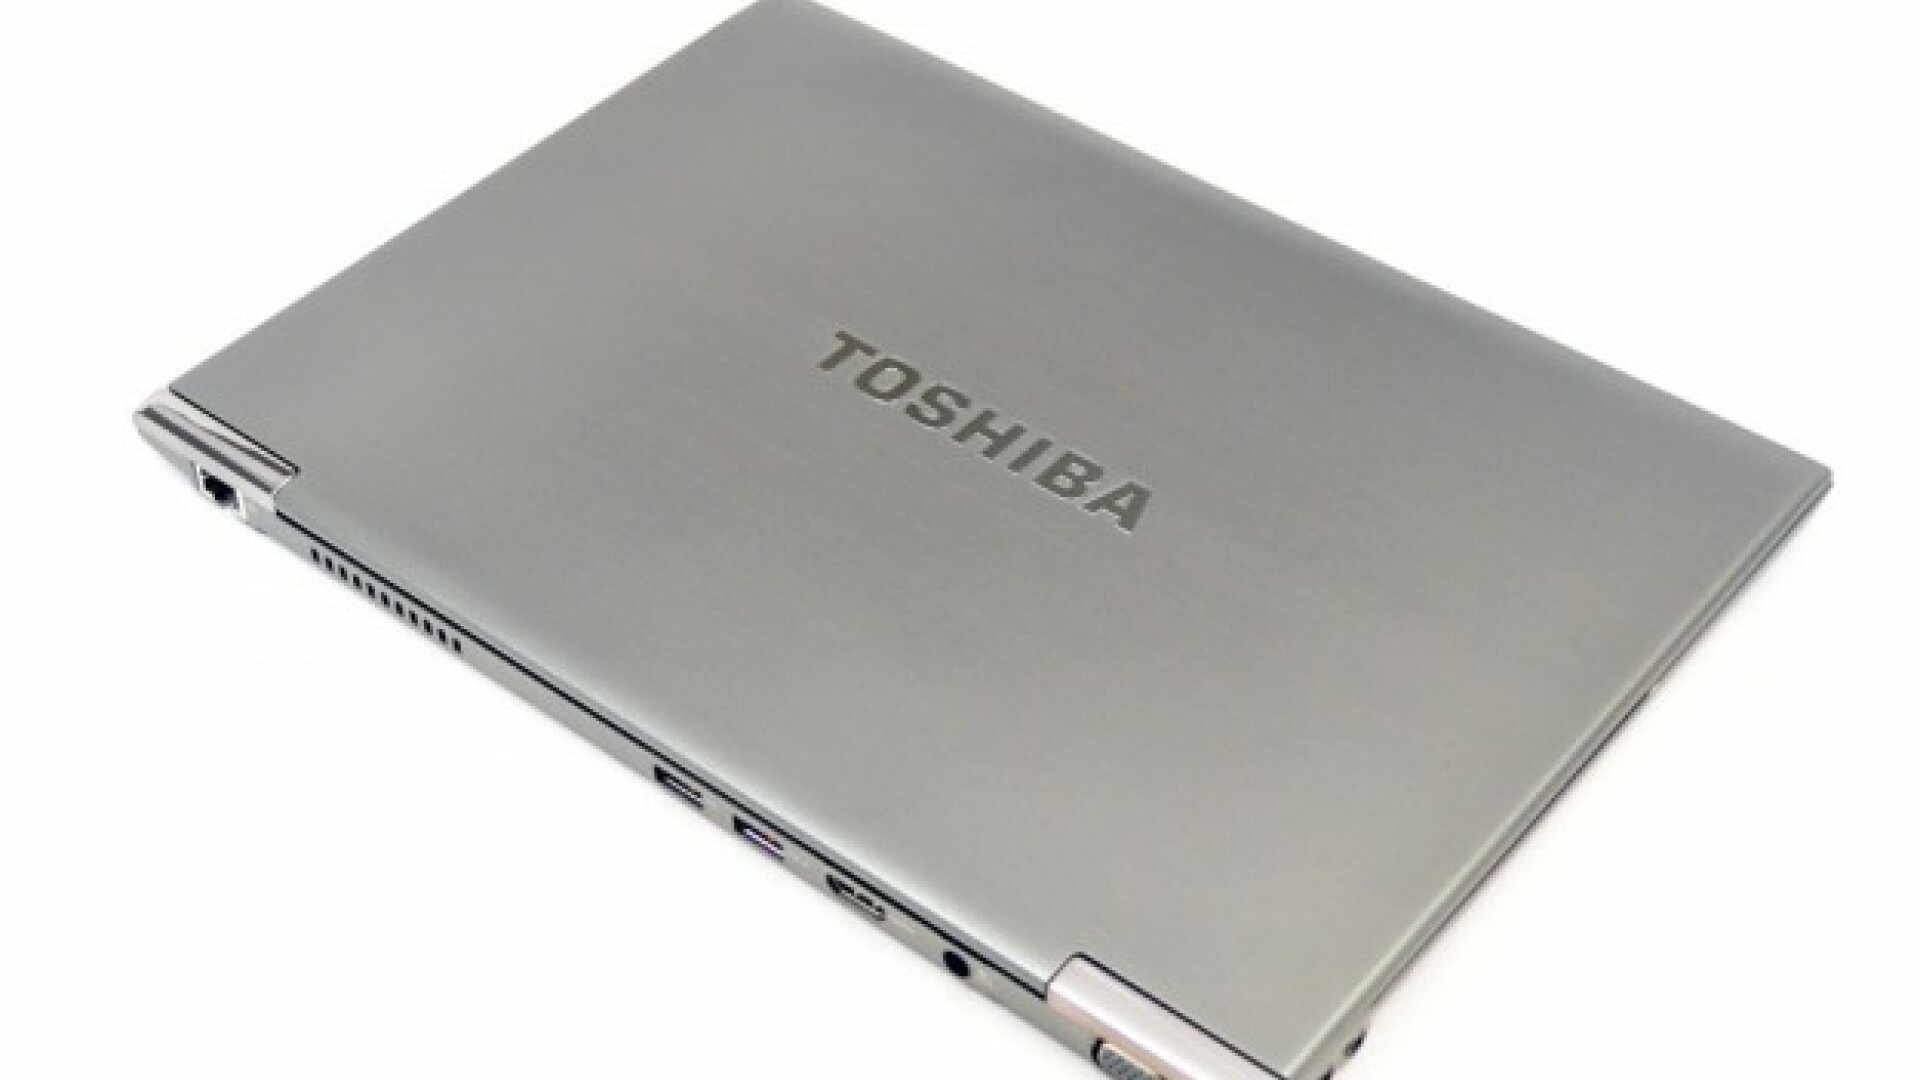 Toshiba Portege Z830